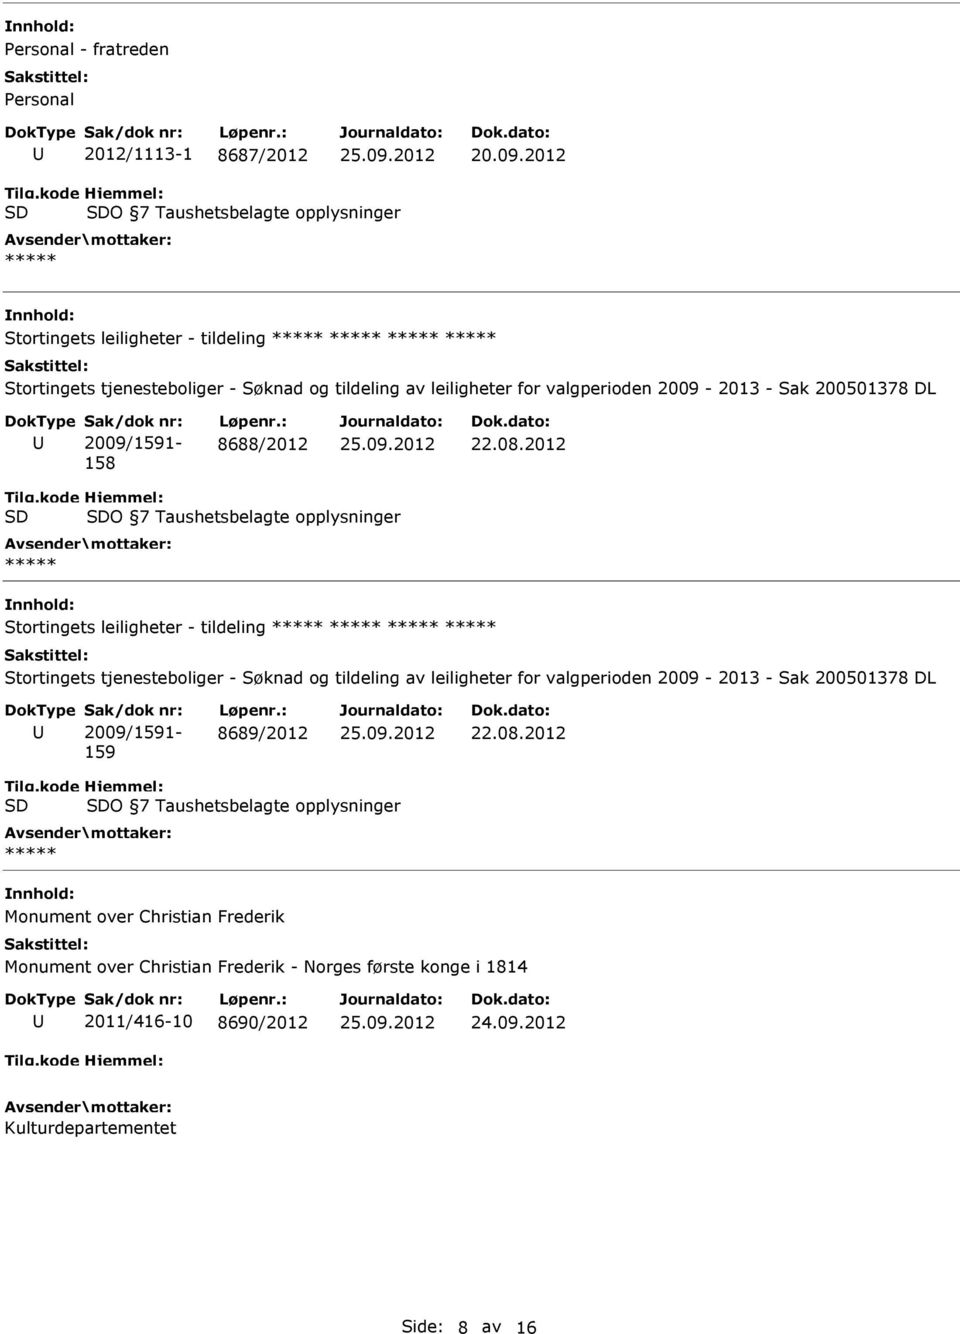 2012 O 7 Taushetsbelagte opplysninger Stortingets leiligheter - tildeling Stortingets tjenesteboliger - Søknad og tildeling av leiligheter for valgperioden 2009-2013